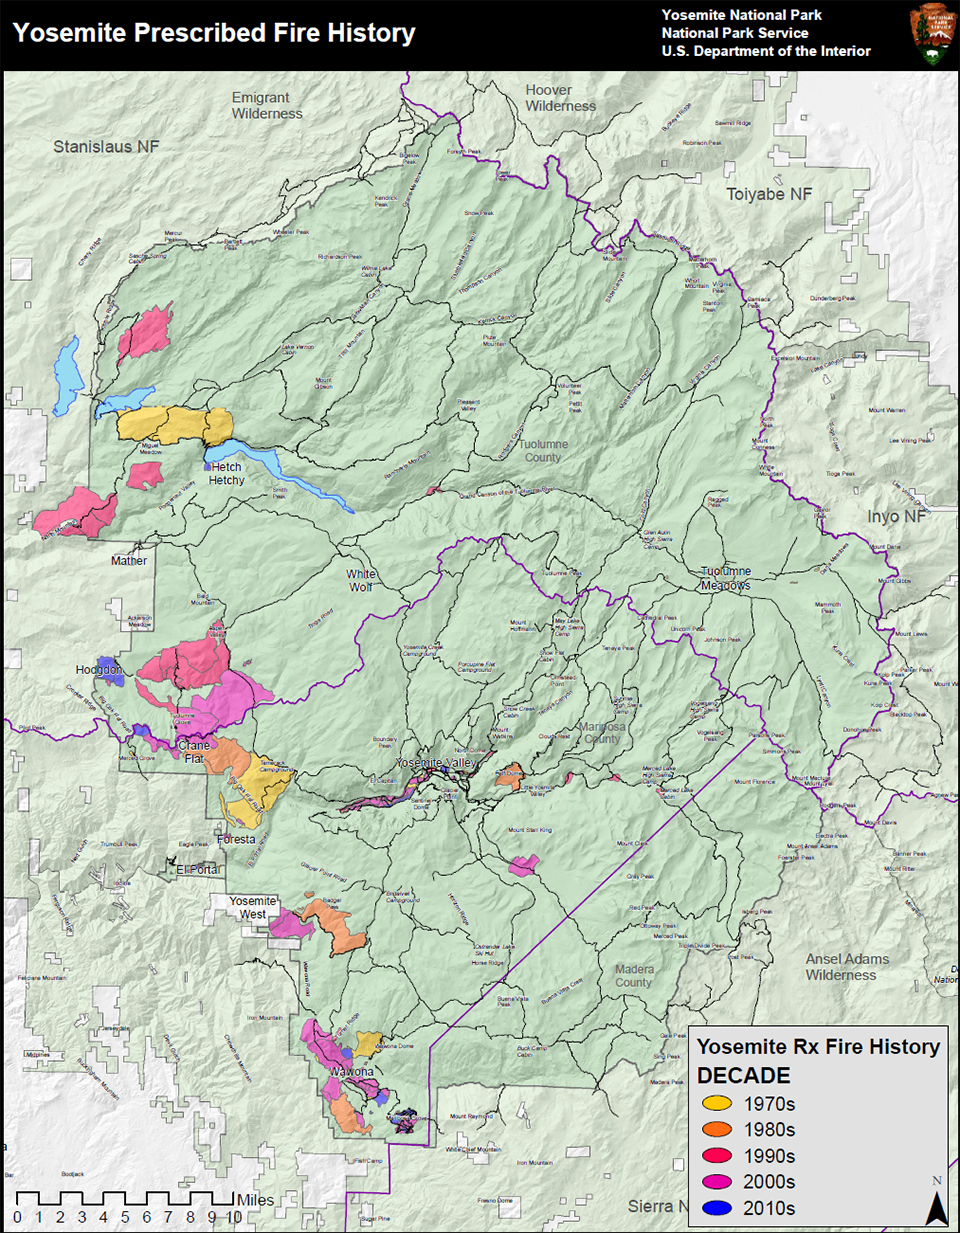 Тематическая карта, показывающая историю предписанных пожаров в Йосемити с разбивкой по десятилетиям